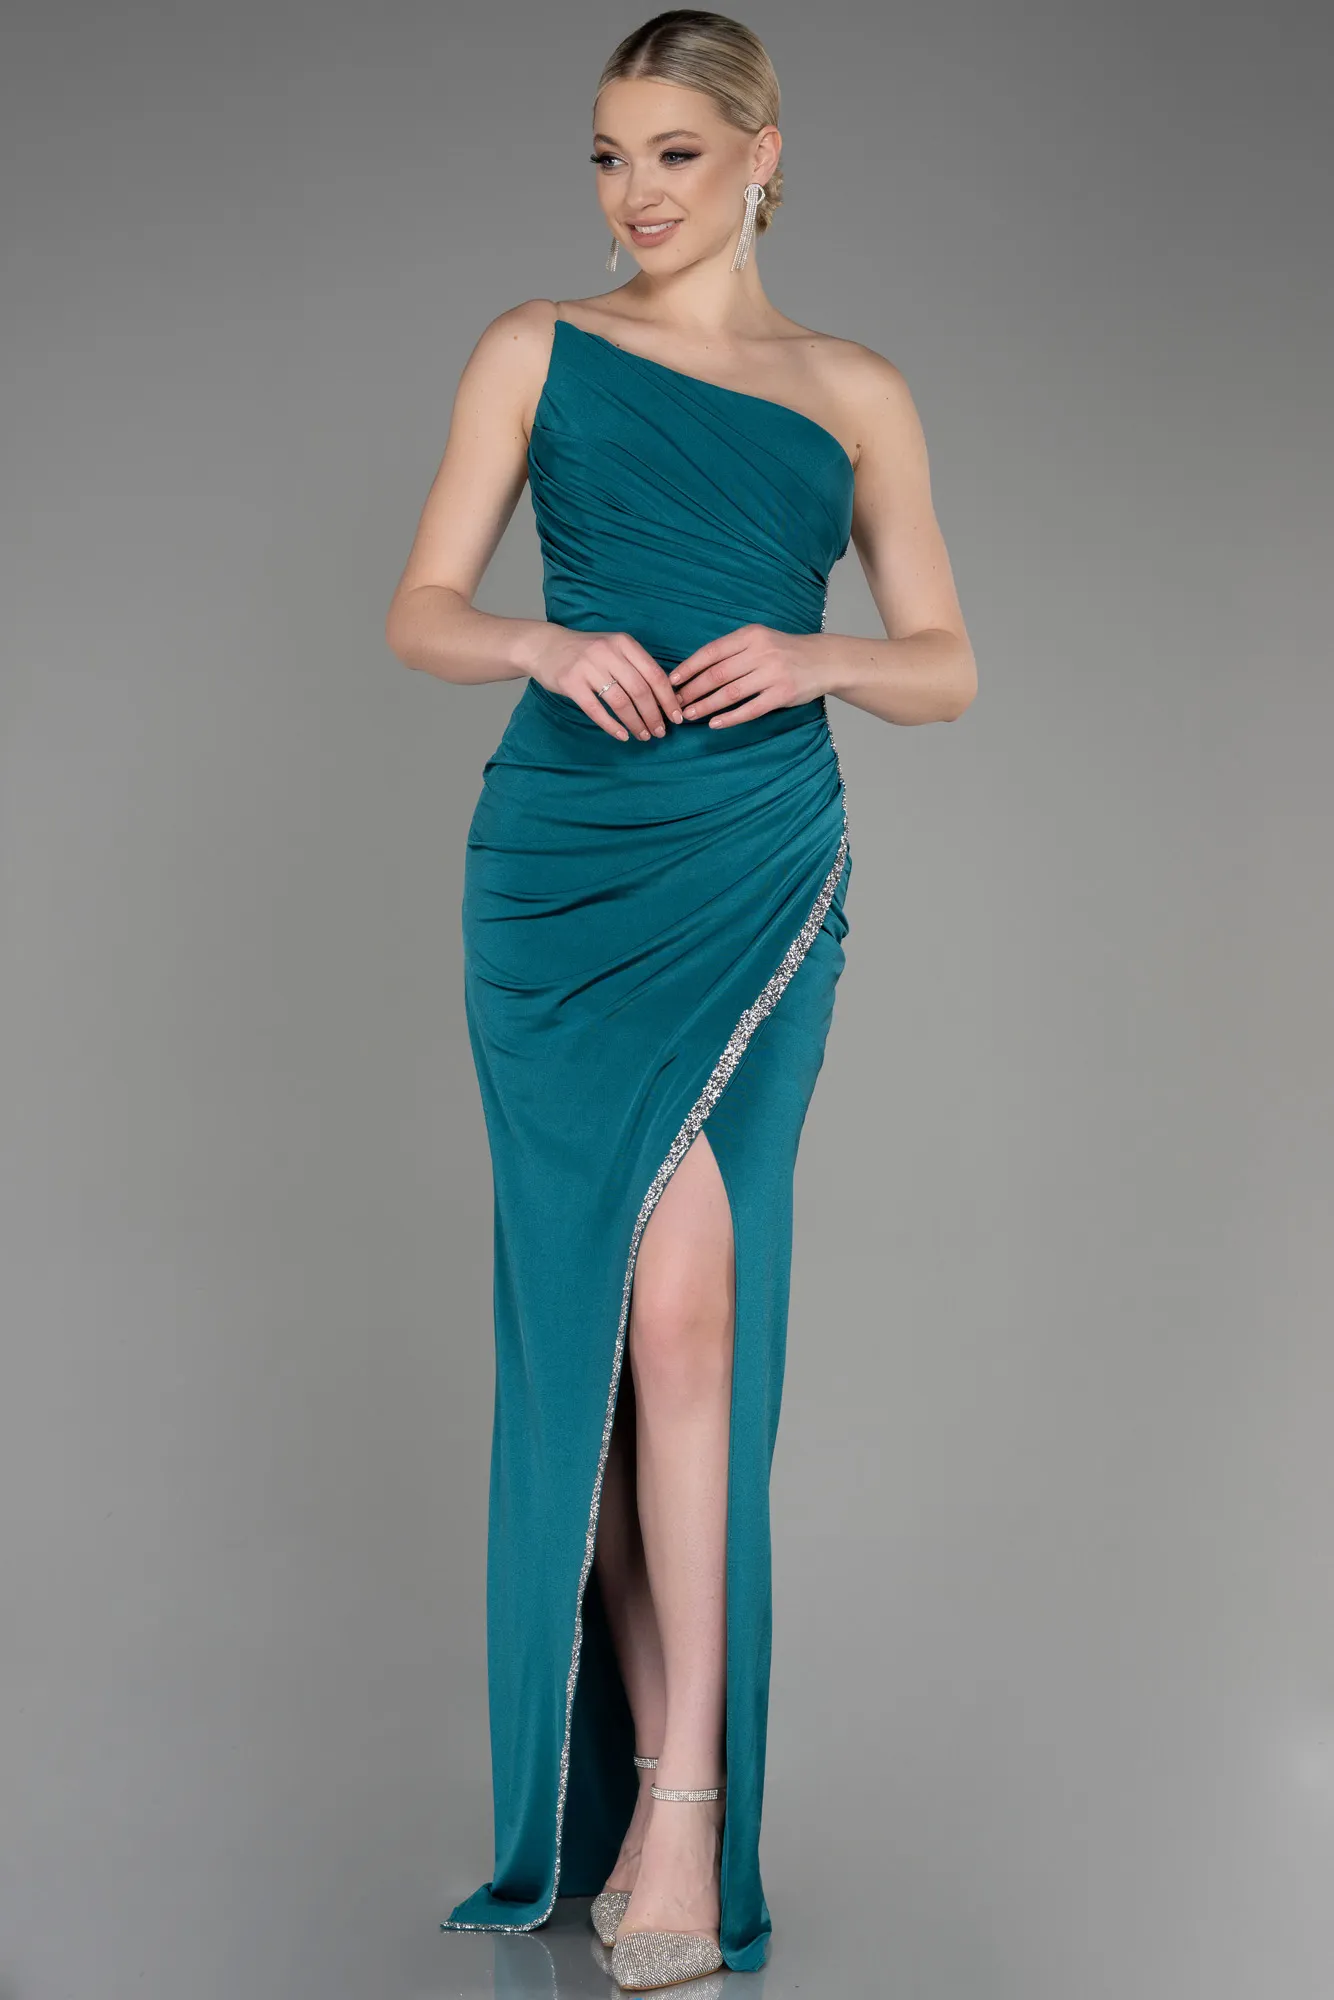 Emerald Green-Long Evening Dress ABU3764